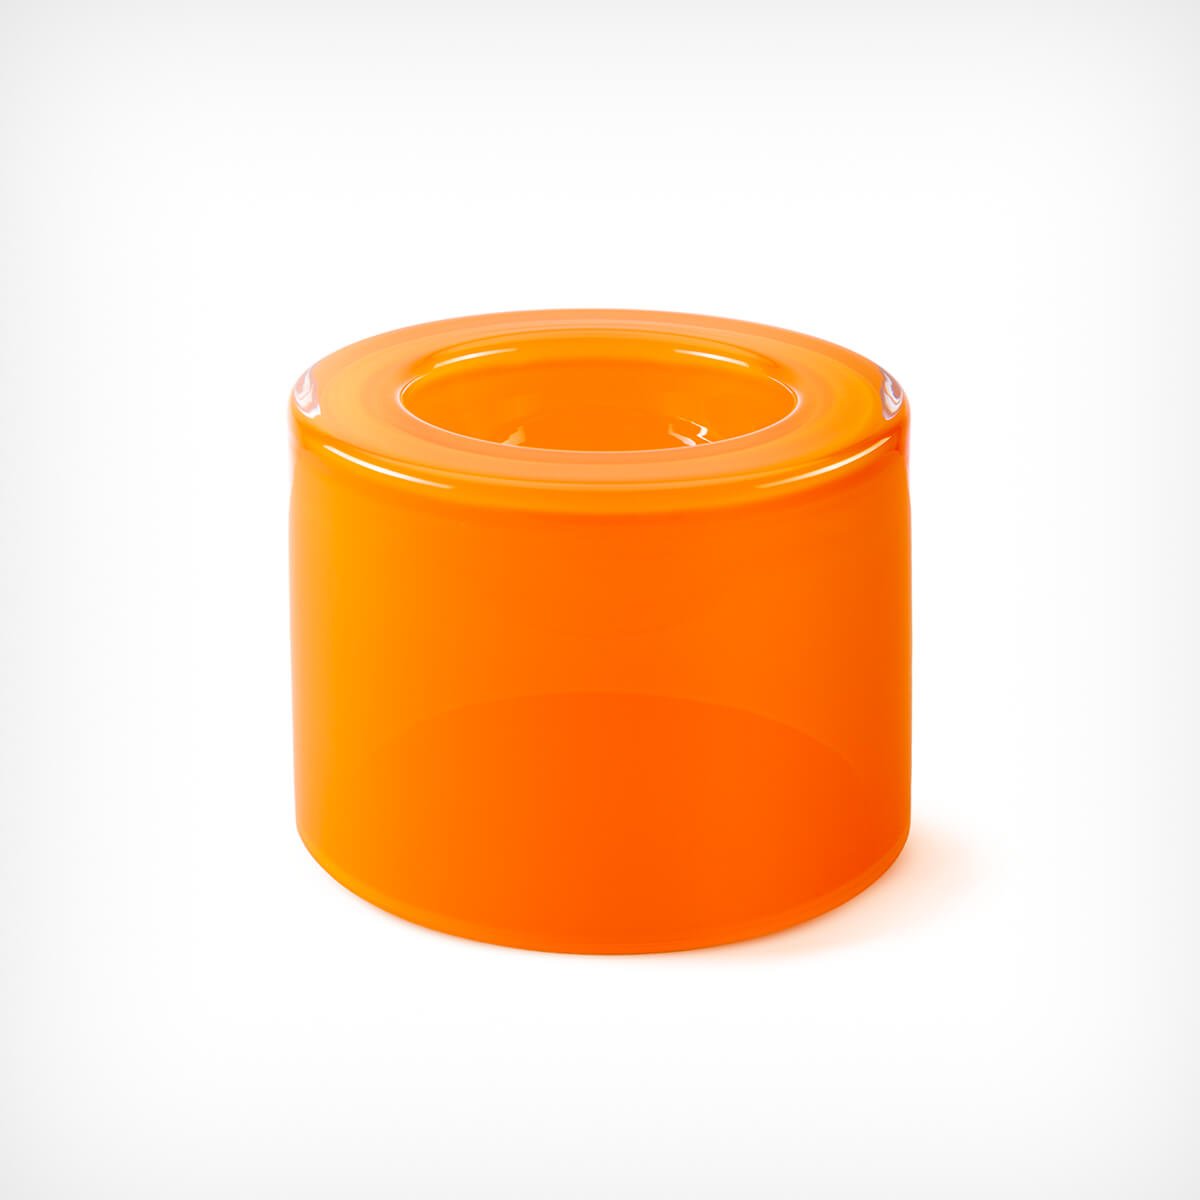 Schale „WET Bowl” Orange hoch Ursula Futura – diesellerie.com